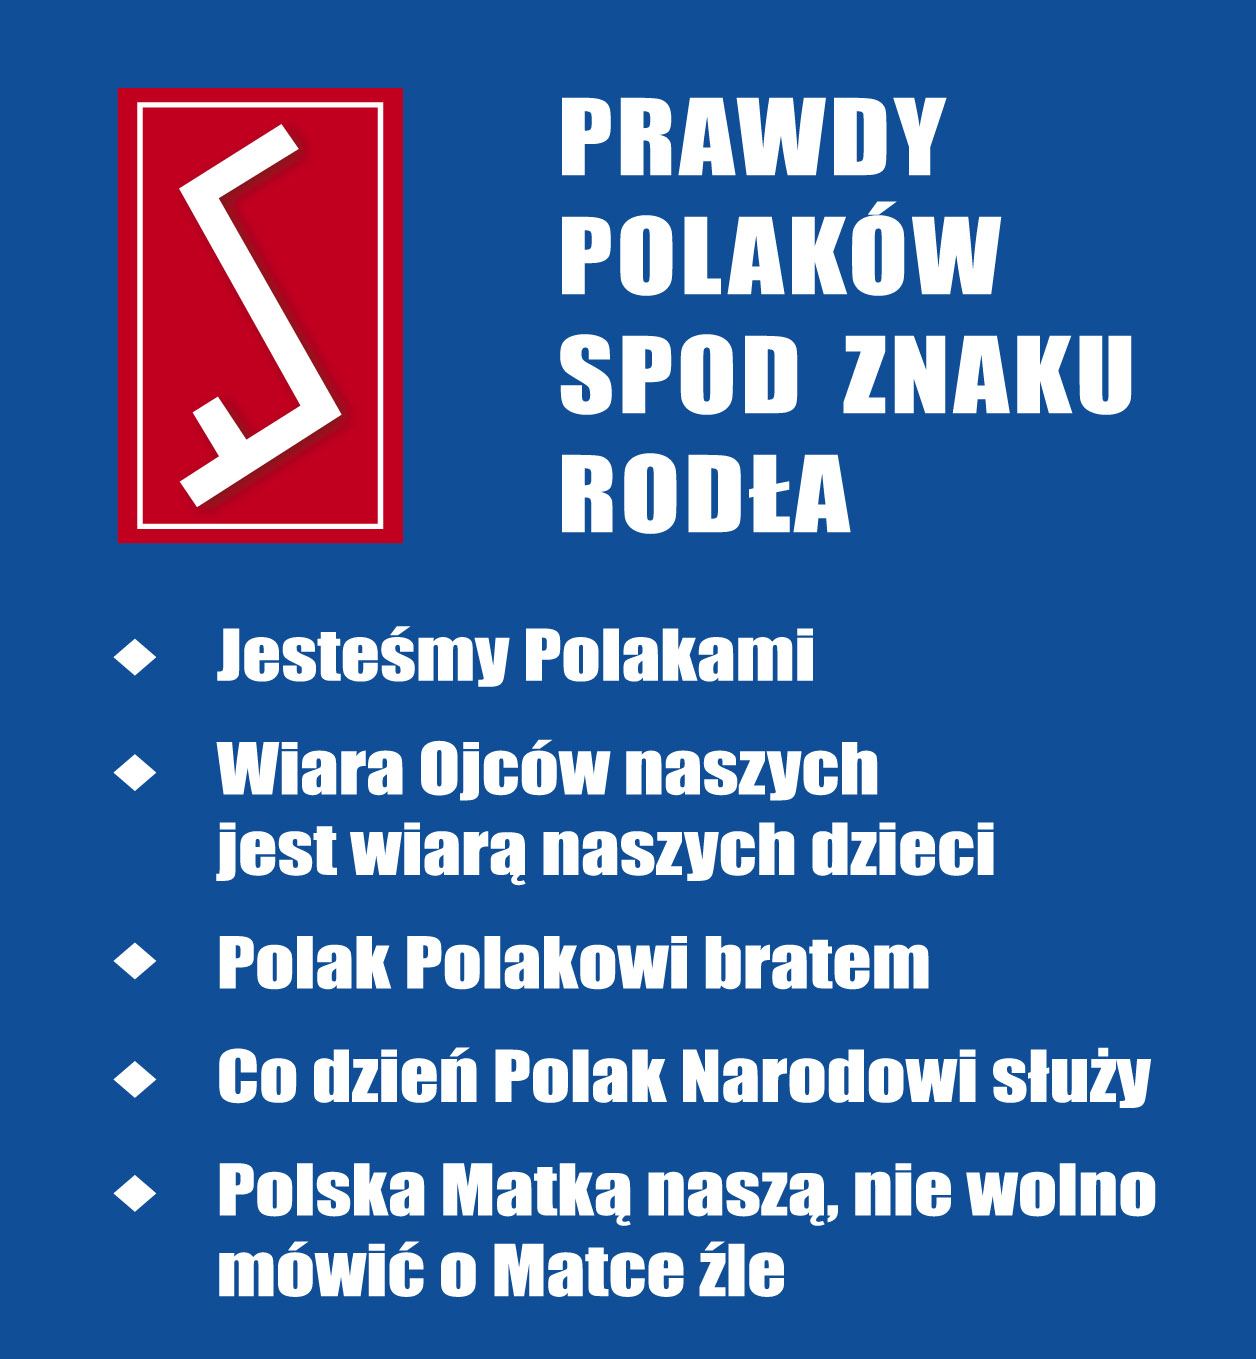 5 Prawd Polaków spod Znaku Rodła